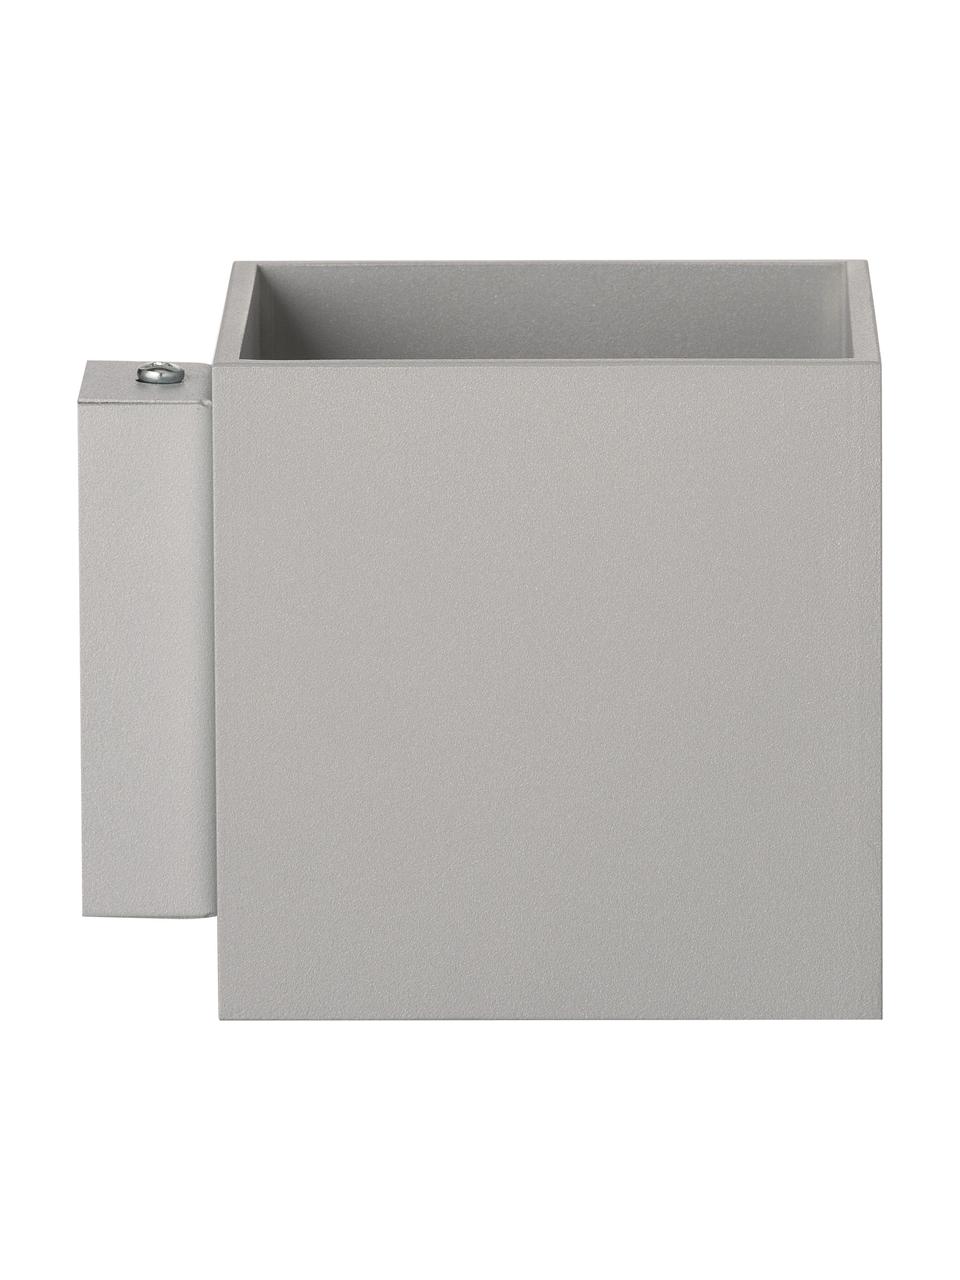 Petite applique grise minimaliste Quad, Gris, larg. 10 x haut. 10 cm